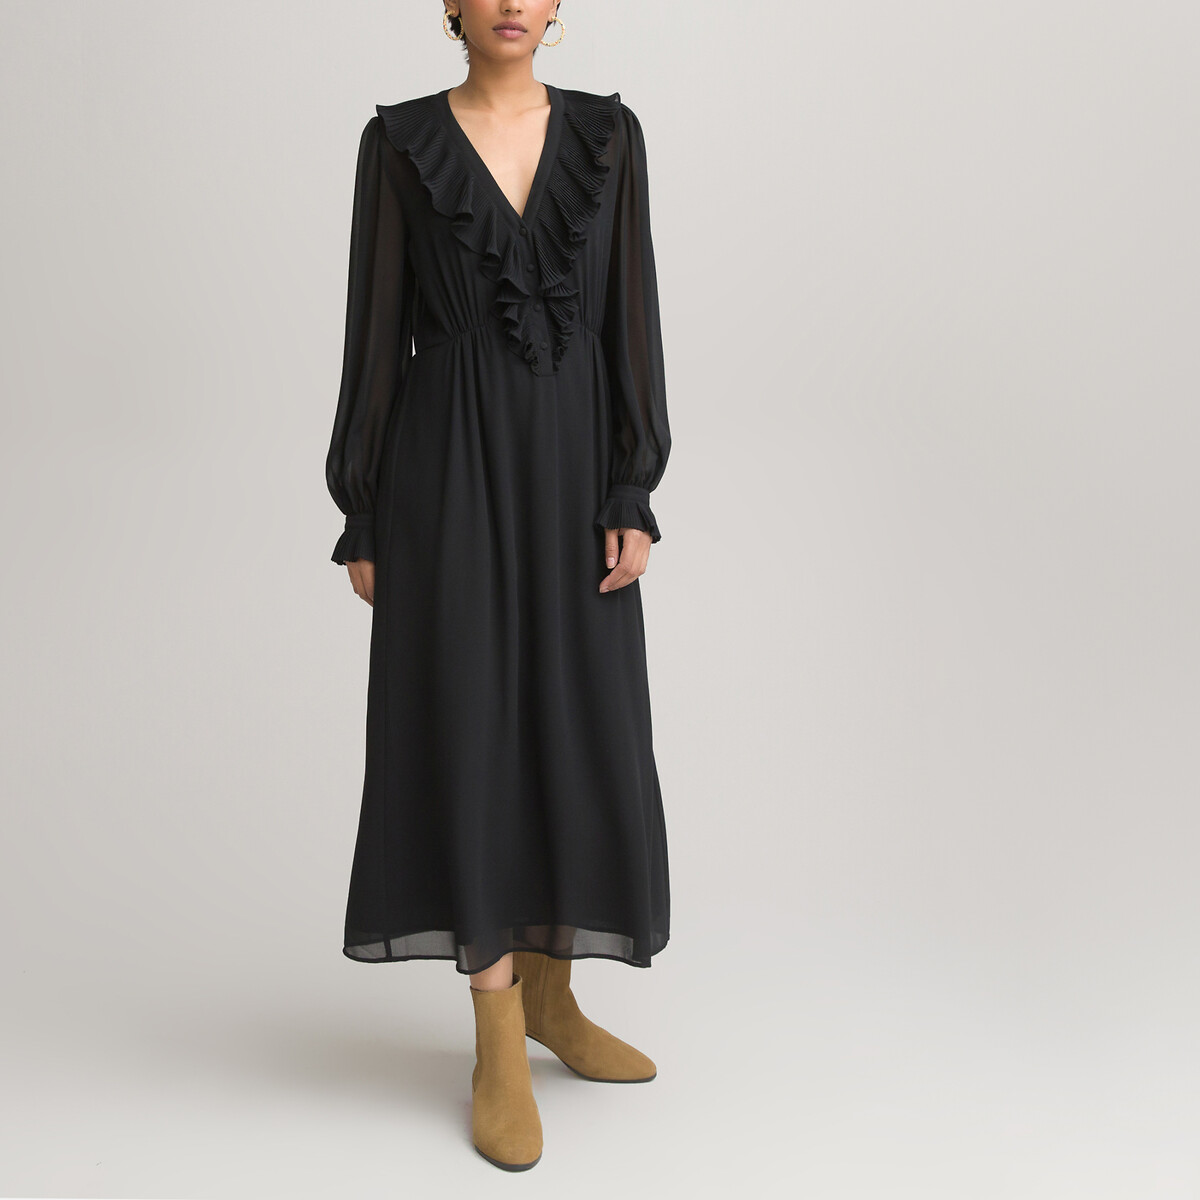 Платье LaRedoute Длинное с V-образным вырезом длинные рукава 48 черный, размер 48 - фото 2